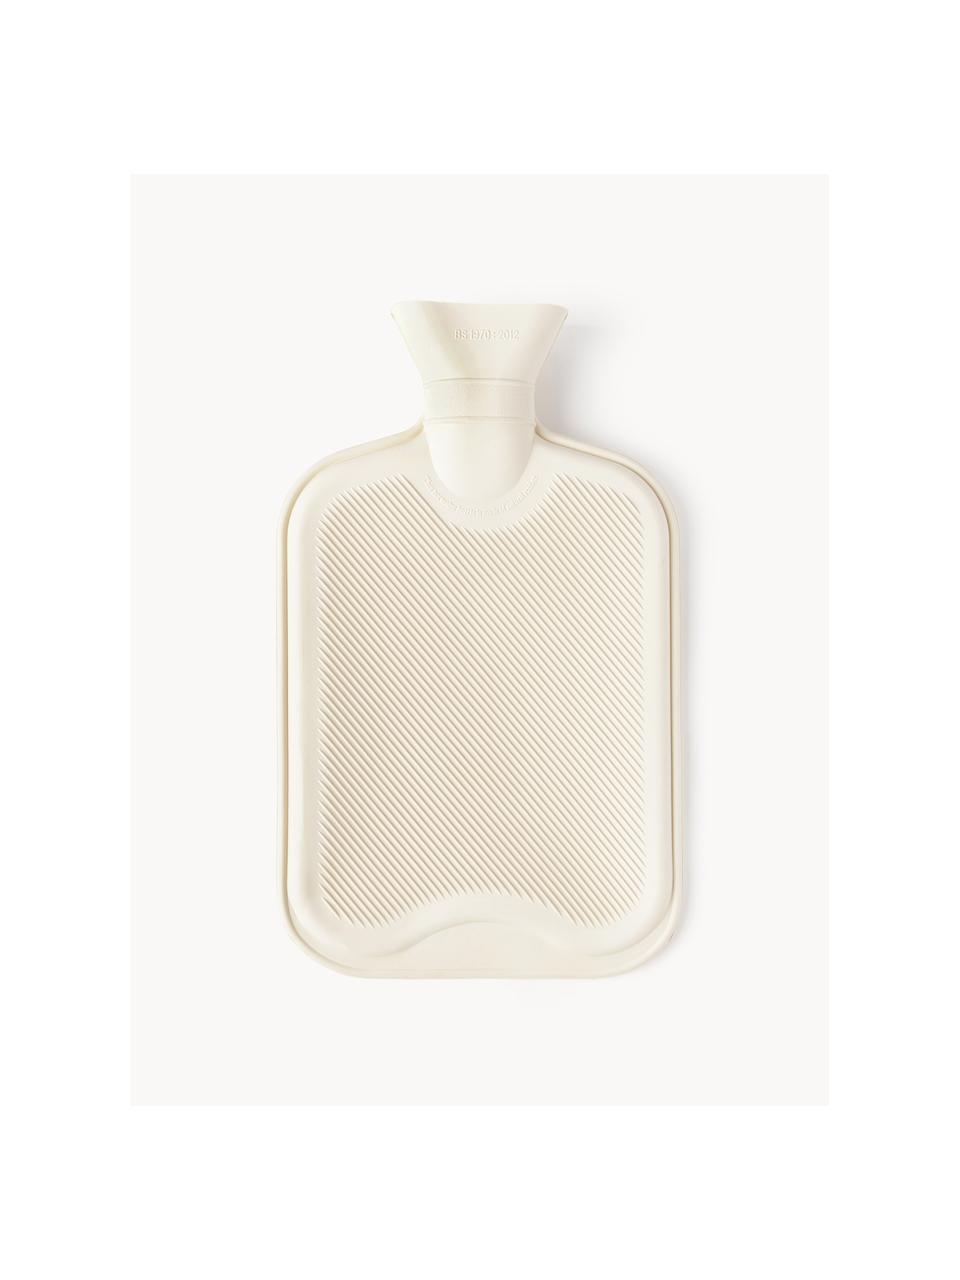 Borsa termica Rubber Bottle, 100% gomma, Bianco latte, Larg. 20 x Lung. 32 cm